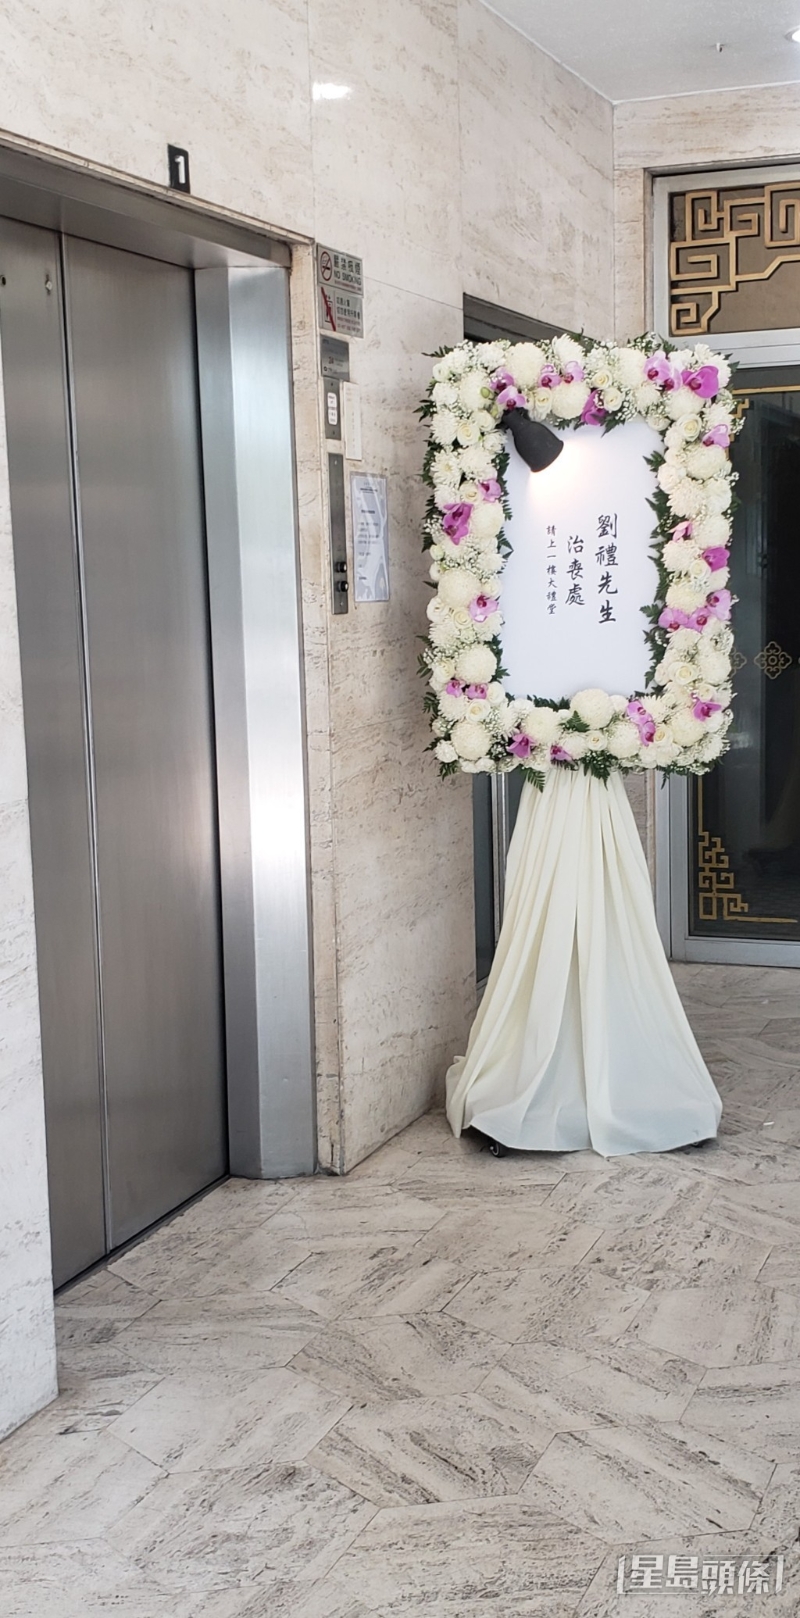 刘德华父亲刘礼明天（6日）正午12时出殡，灵柩移送到歌连臣角火葬场举行火化礼。